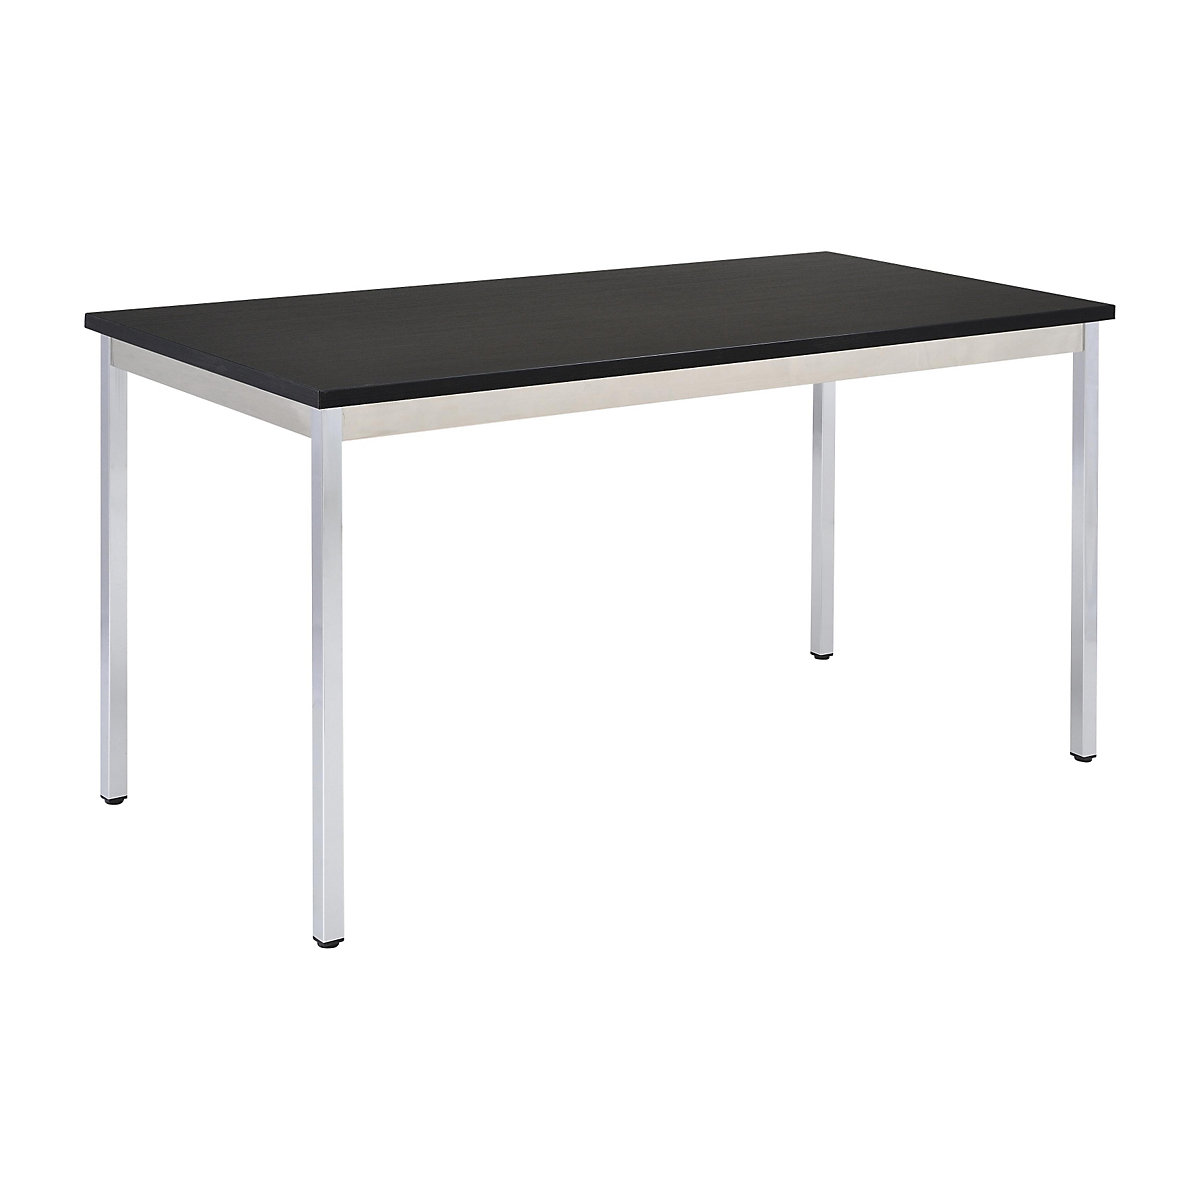 Višenamjenski stol – eurokraft basic, pravokutna izvedba, VxŠxD 740 x 700 x 600 mm, ploča u crnoj boji, kromirano postolje-16